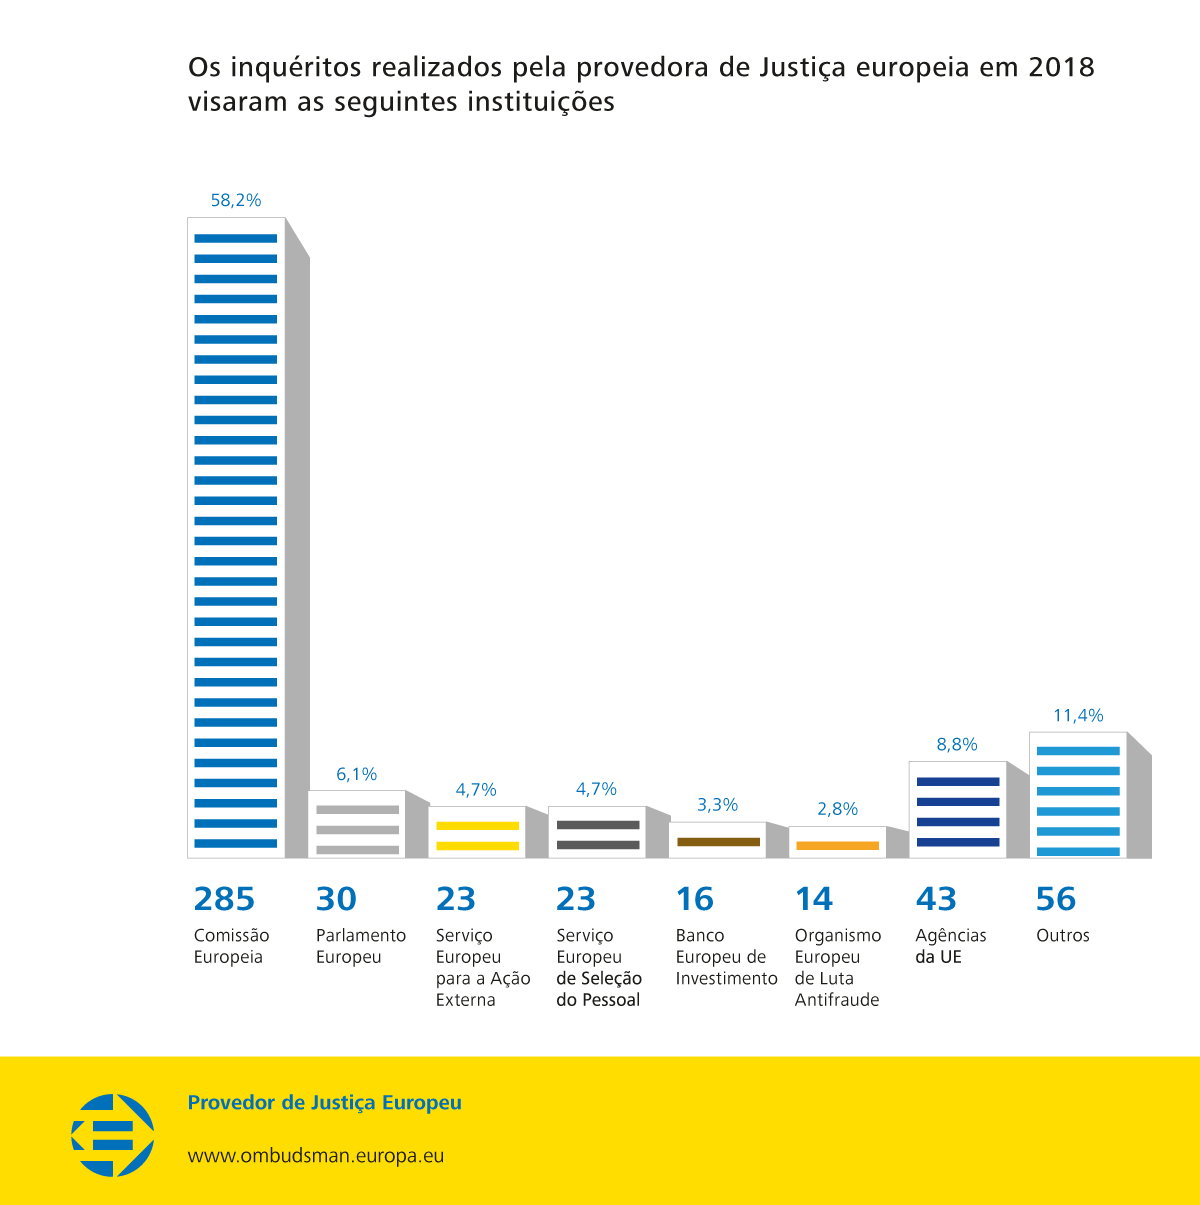 Os inquéritos realizados pela provedora de Justiça europeia em 2018 visaram as seguintes instituições